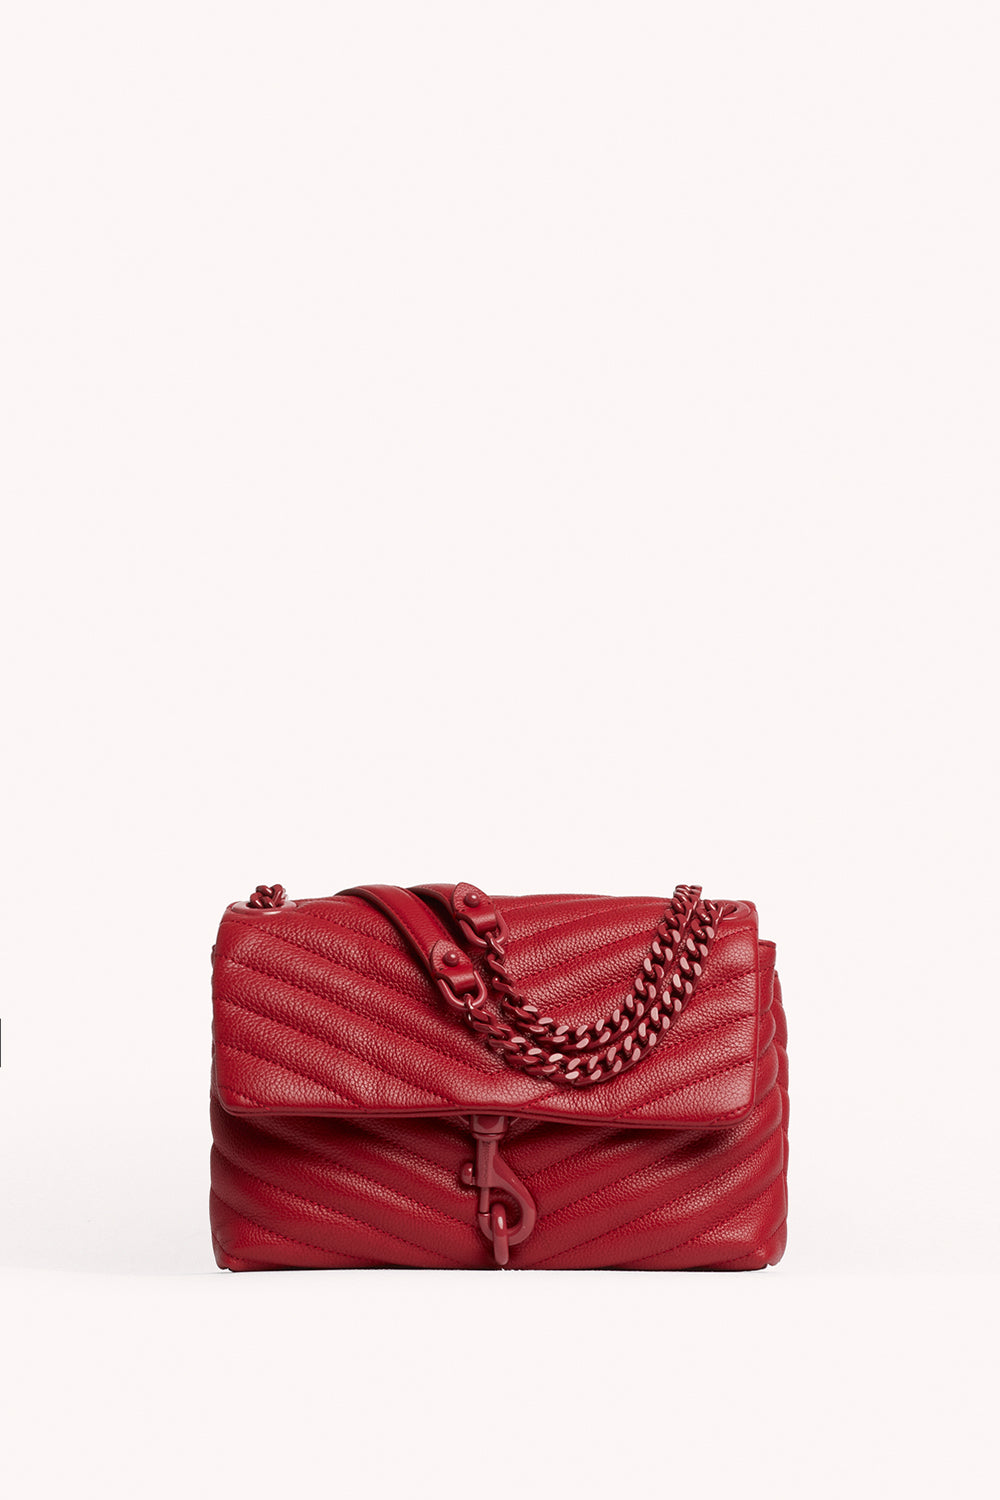 red leather shoulder bag